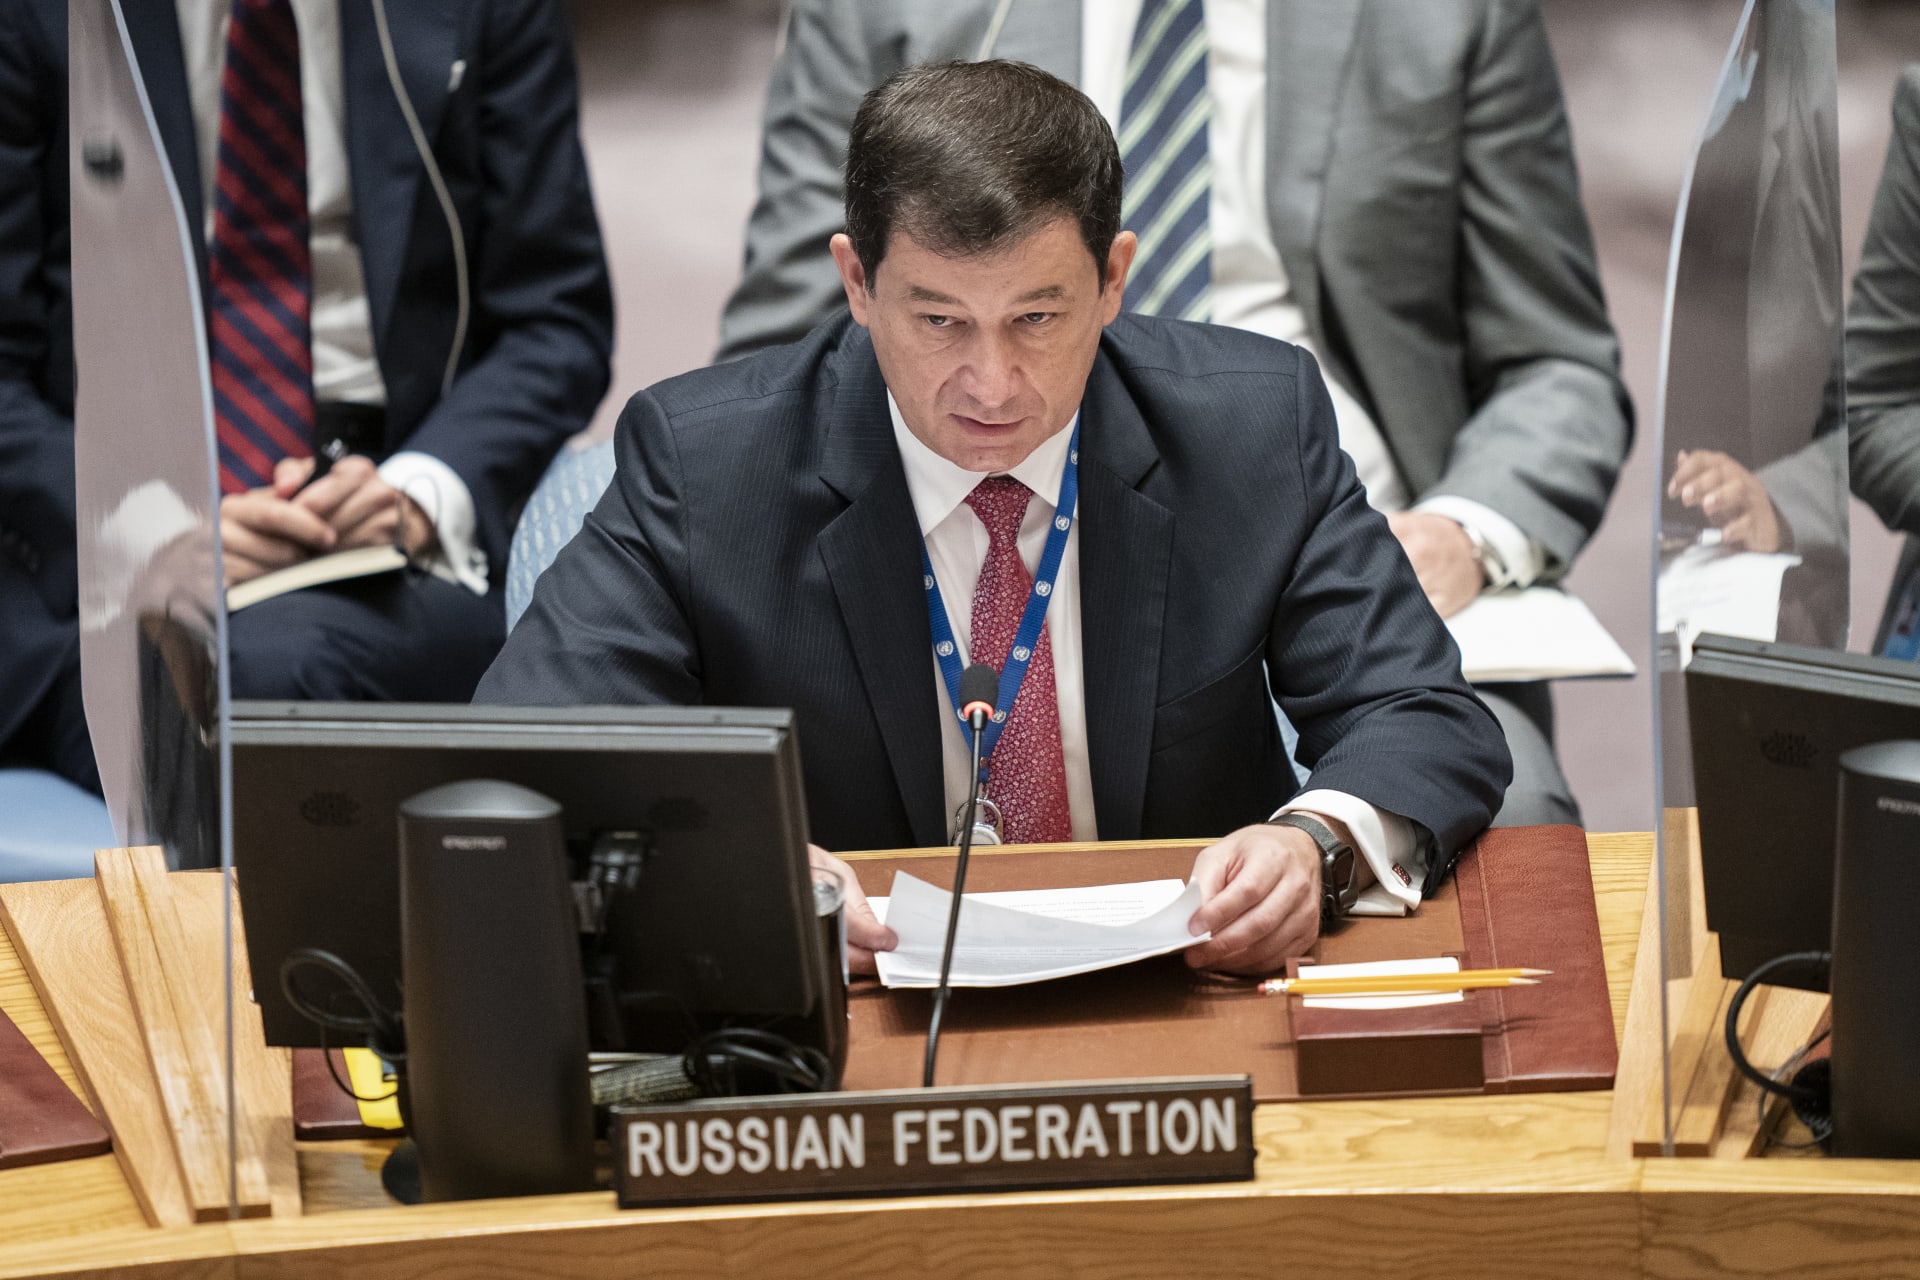 دميتري بوليانسكي نائب السفير الروسي لدى الأمم المتحدة